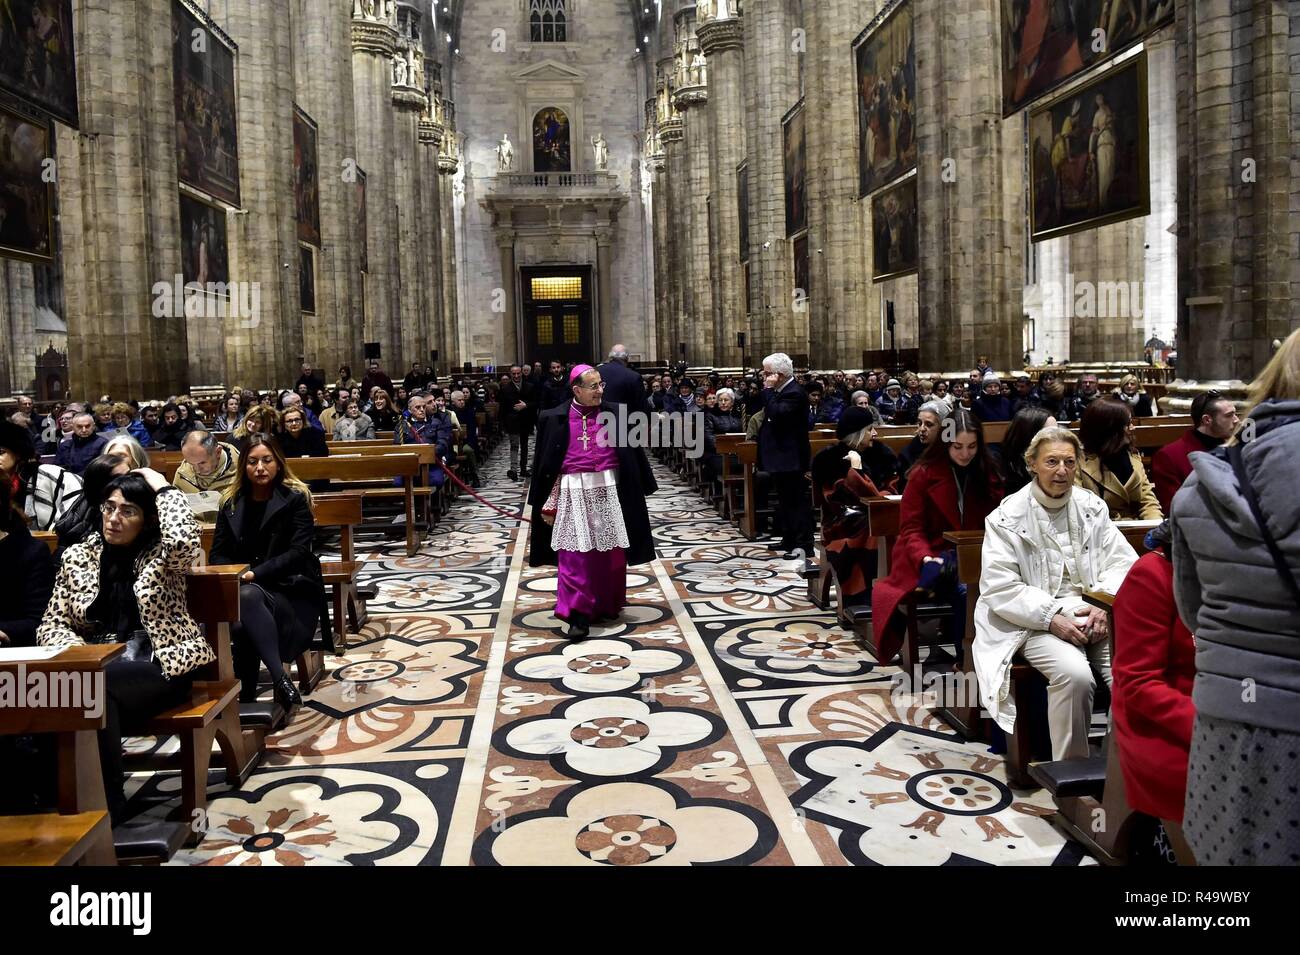 Mass for the Fashion of Archbishop Mario Delpini in the Duomo (Duilio Piaggesi, Milan - 2018-11-25) p.s. la foto e' utilizzabile nel rispetto del contesto in cui e' stata scattata, e senza intento diffamatorio del decoro delle persone rappresentate Stock Photo